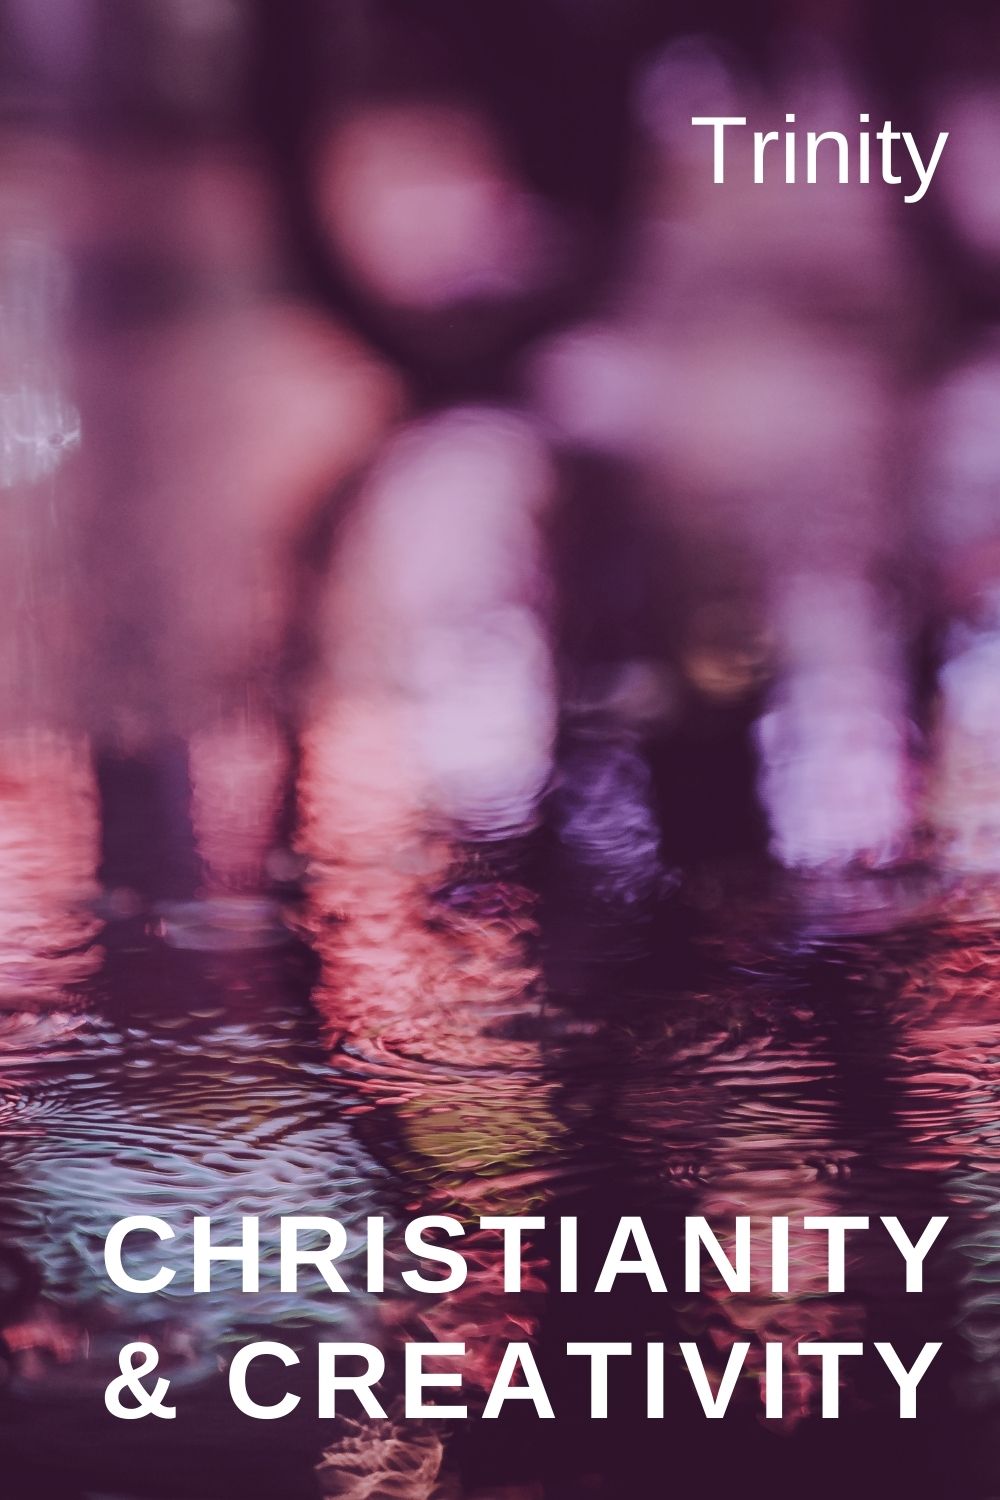 christianity & creativity trinity